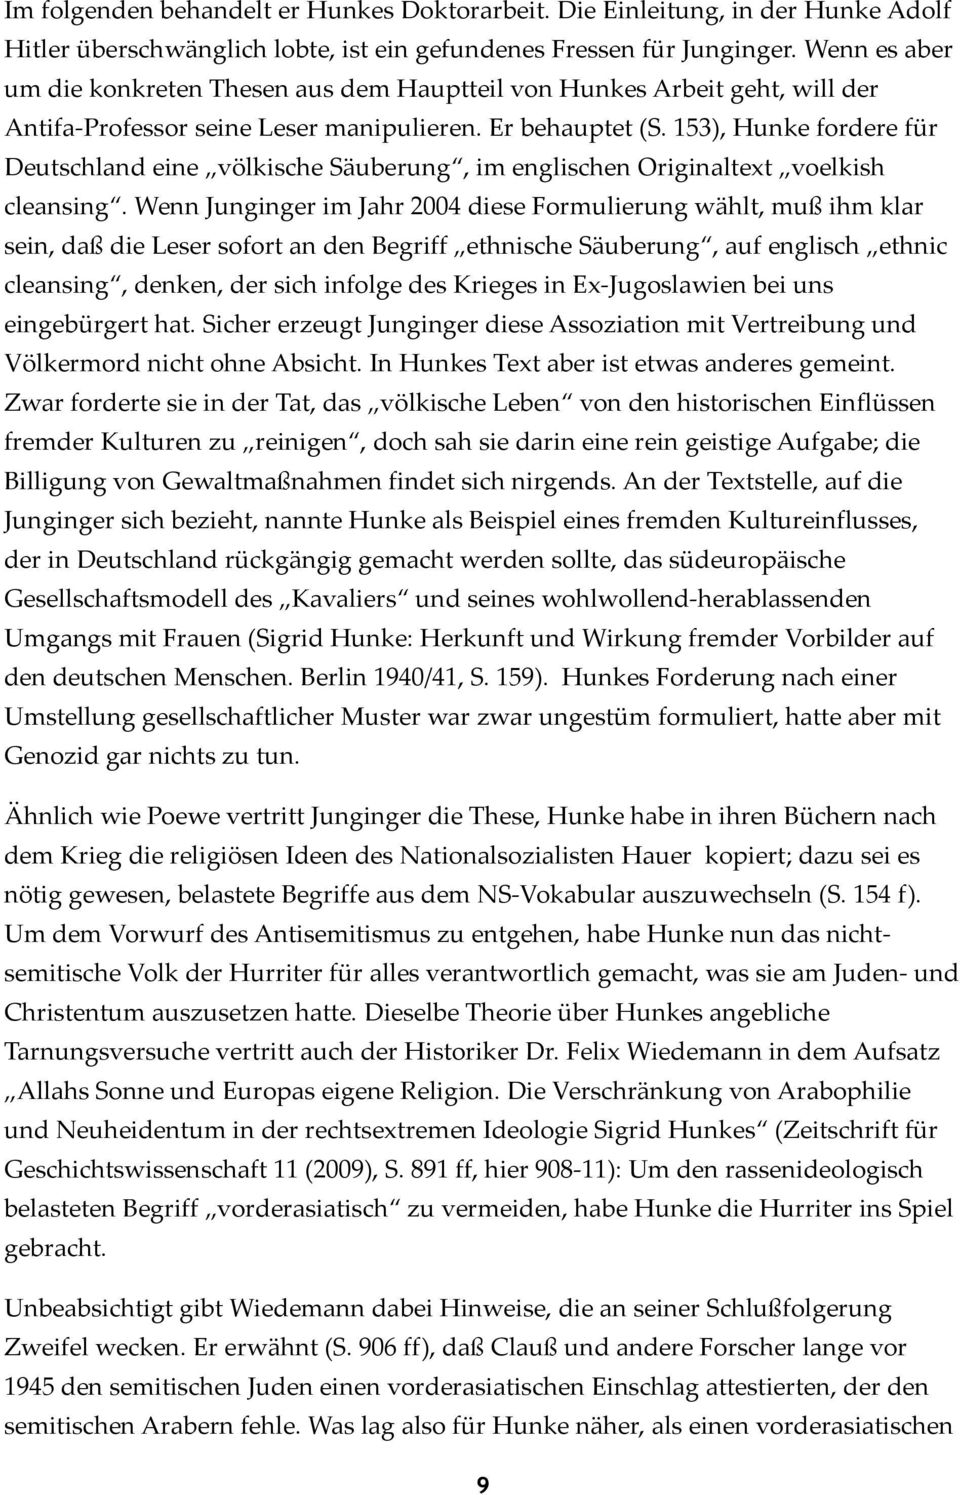 153), Hunke fordere für Deutschland eine völkische Säuberung, im englischen Originaltext voelkish cleansing.